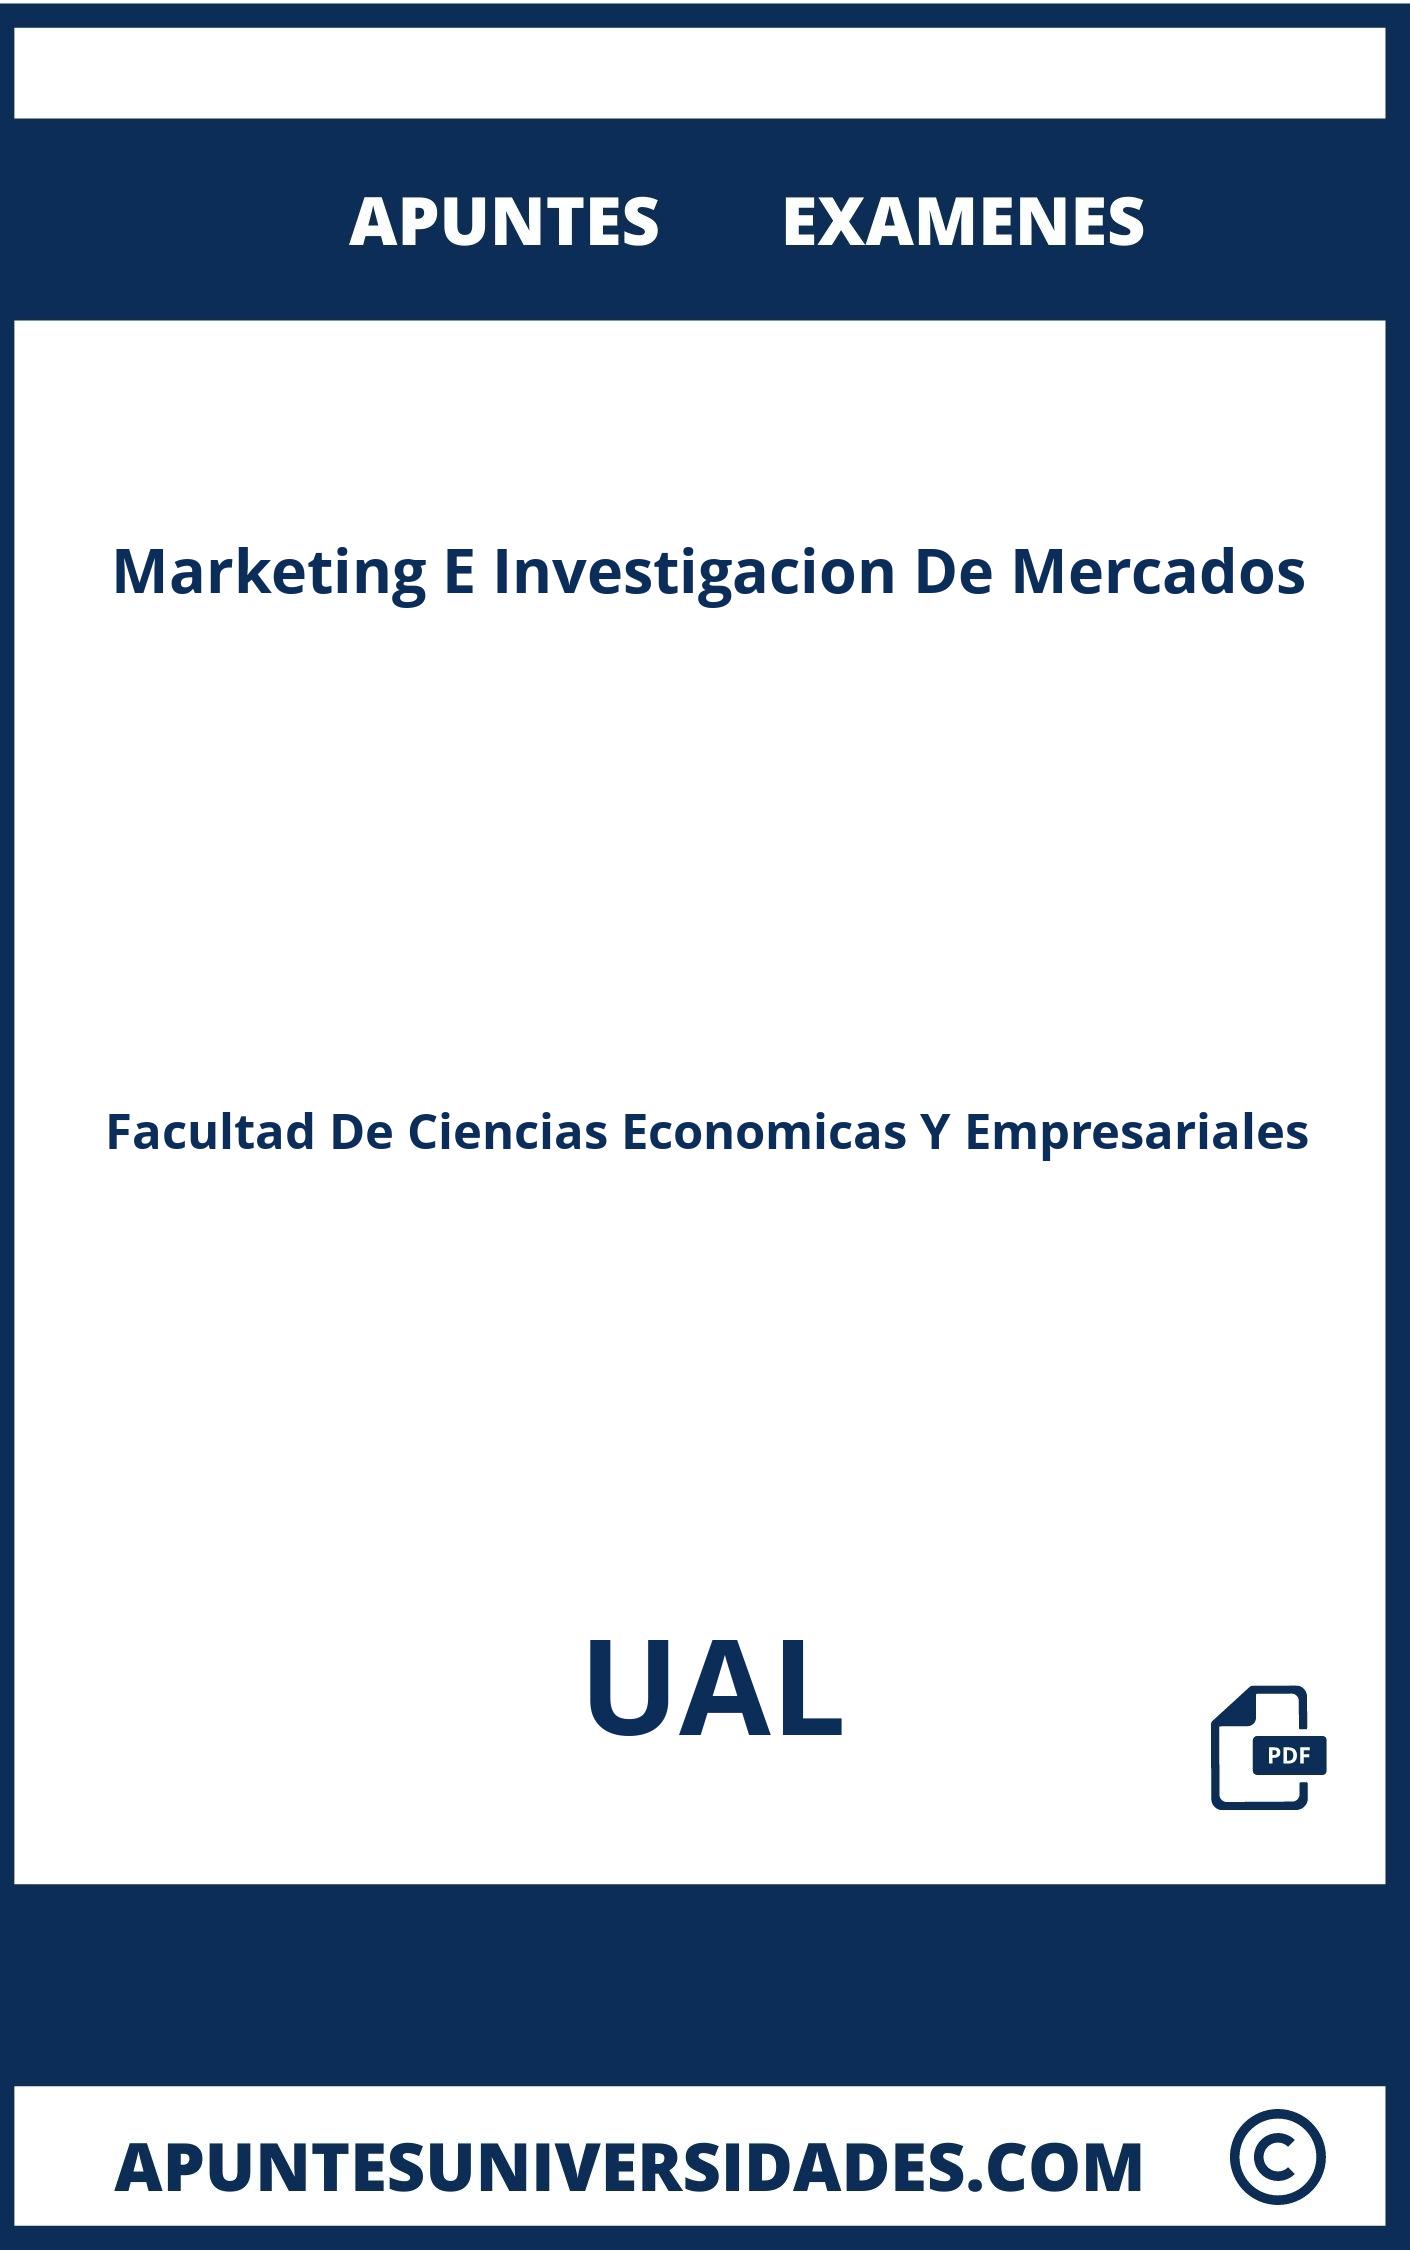 Apuntes y Examenes de Marketing E Investigacion De Mercados UAL